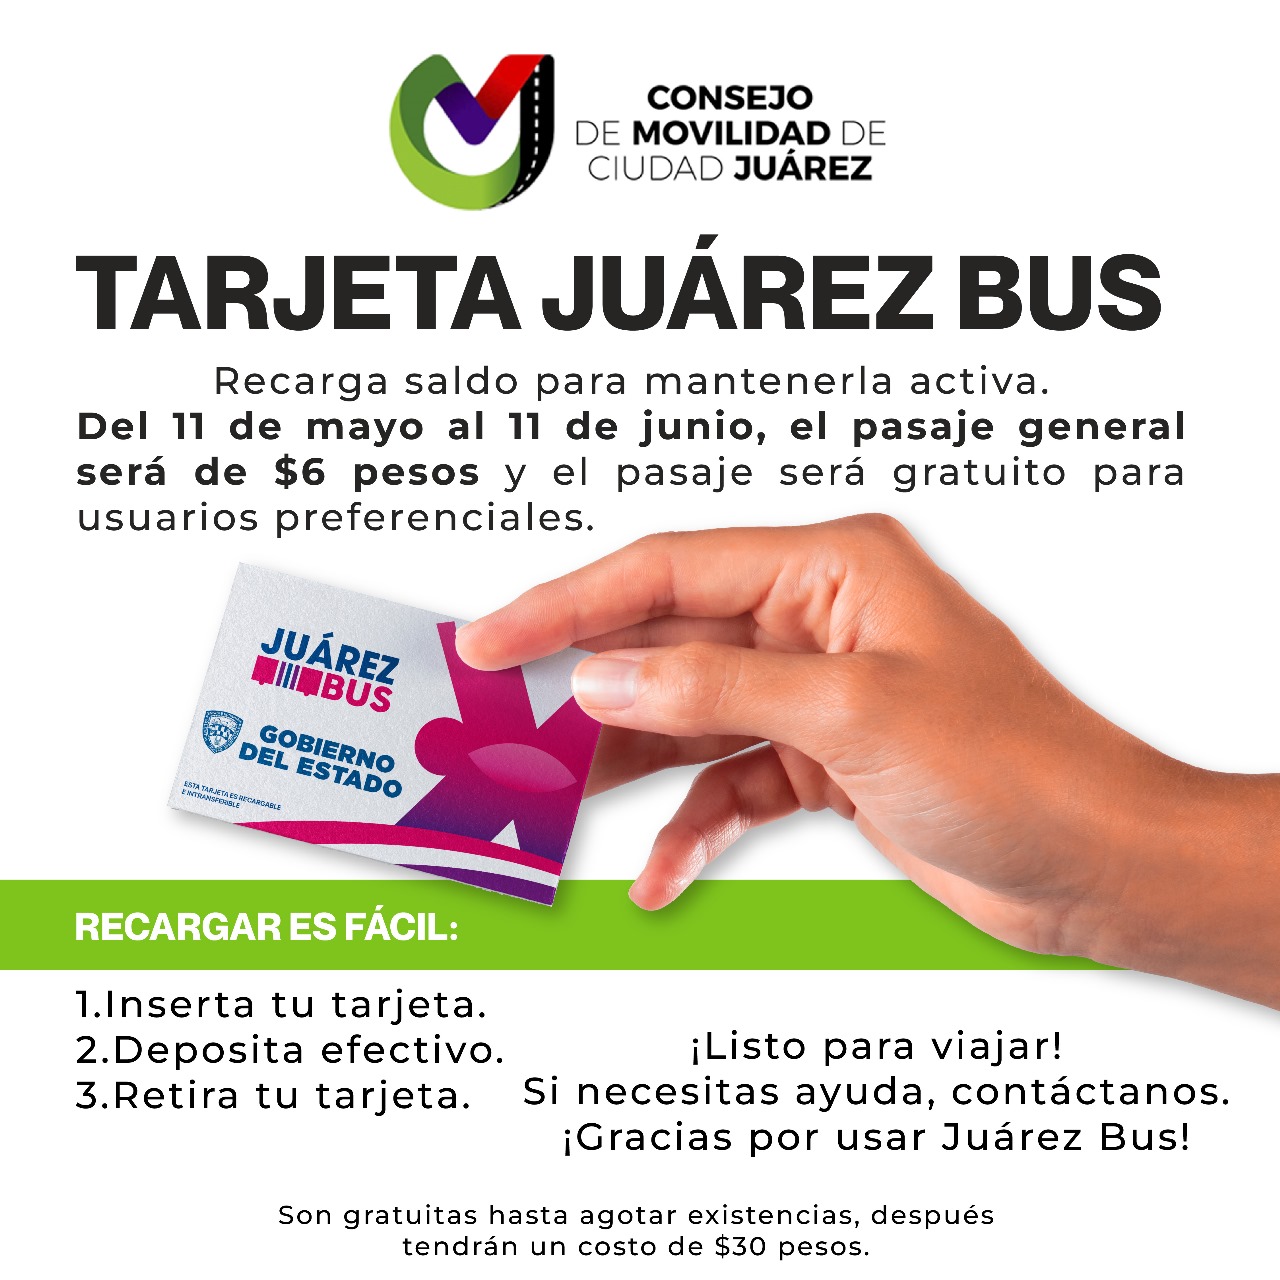 ¿Tienes tu tarjeta general o preferencial de Juárez Bus?